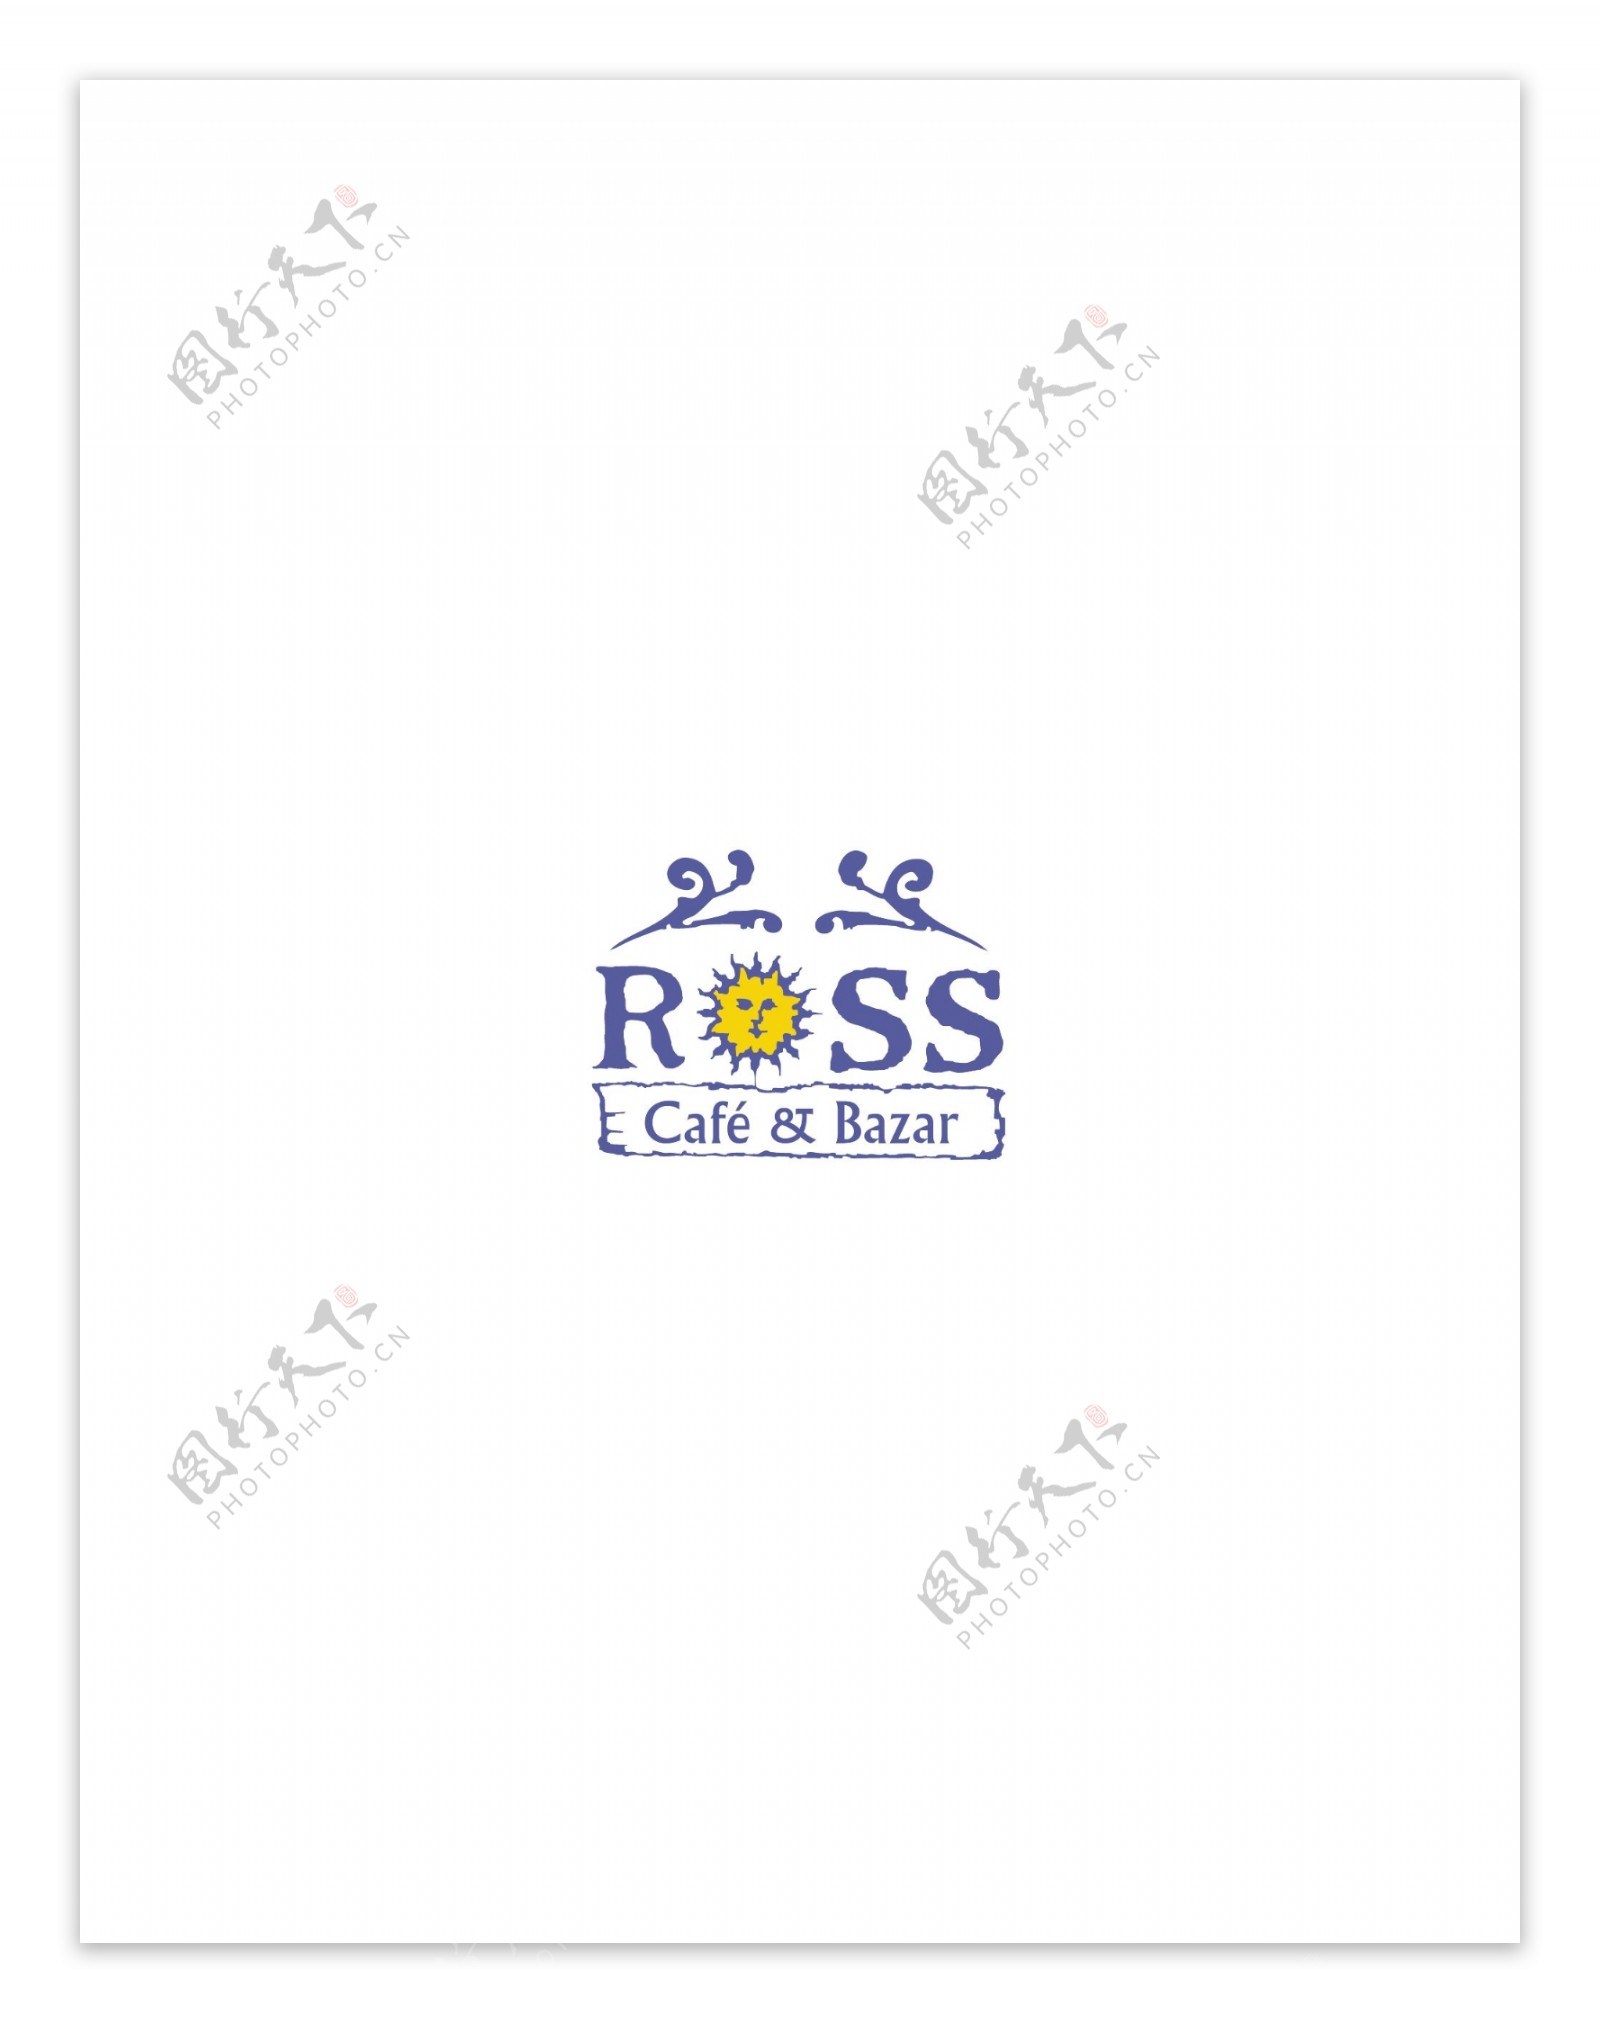 Rosslogo设计欣赏Ross快餐业LOGO下载标志设计欣赏